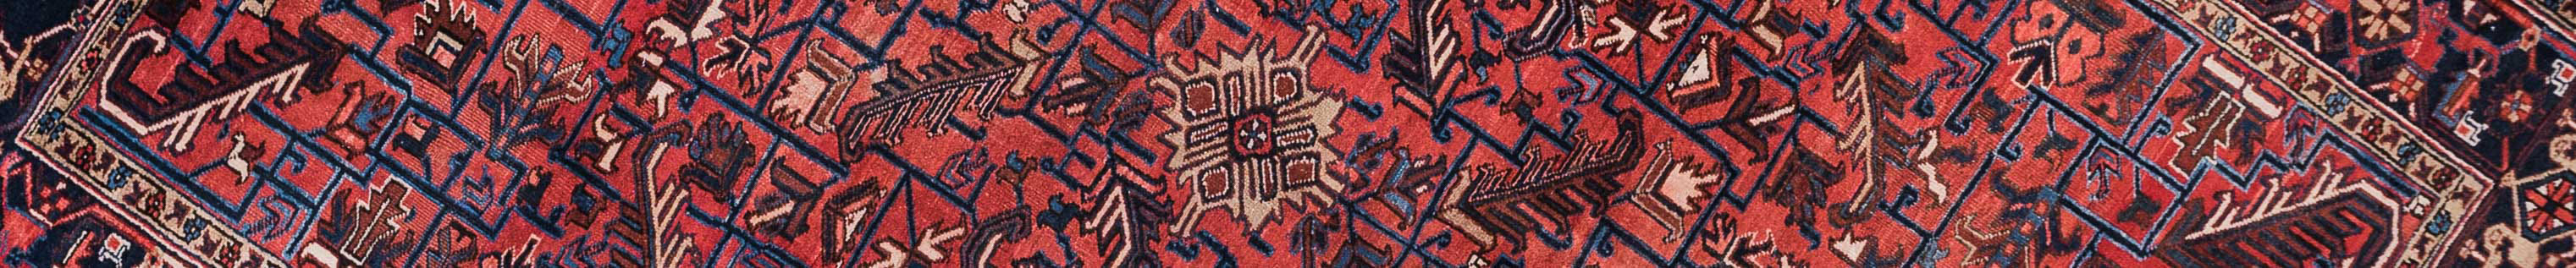 Gravan Persian Carpet Rug N1Carpet Canada Montreal Tapis Persan 2950